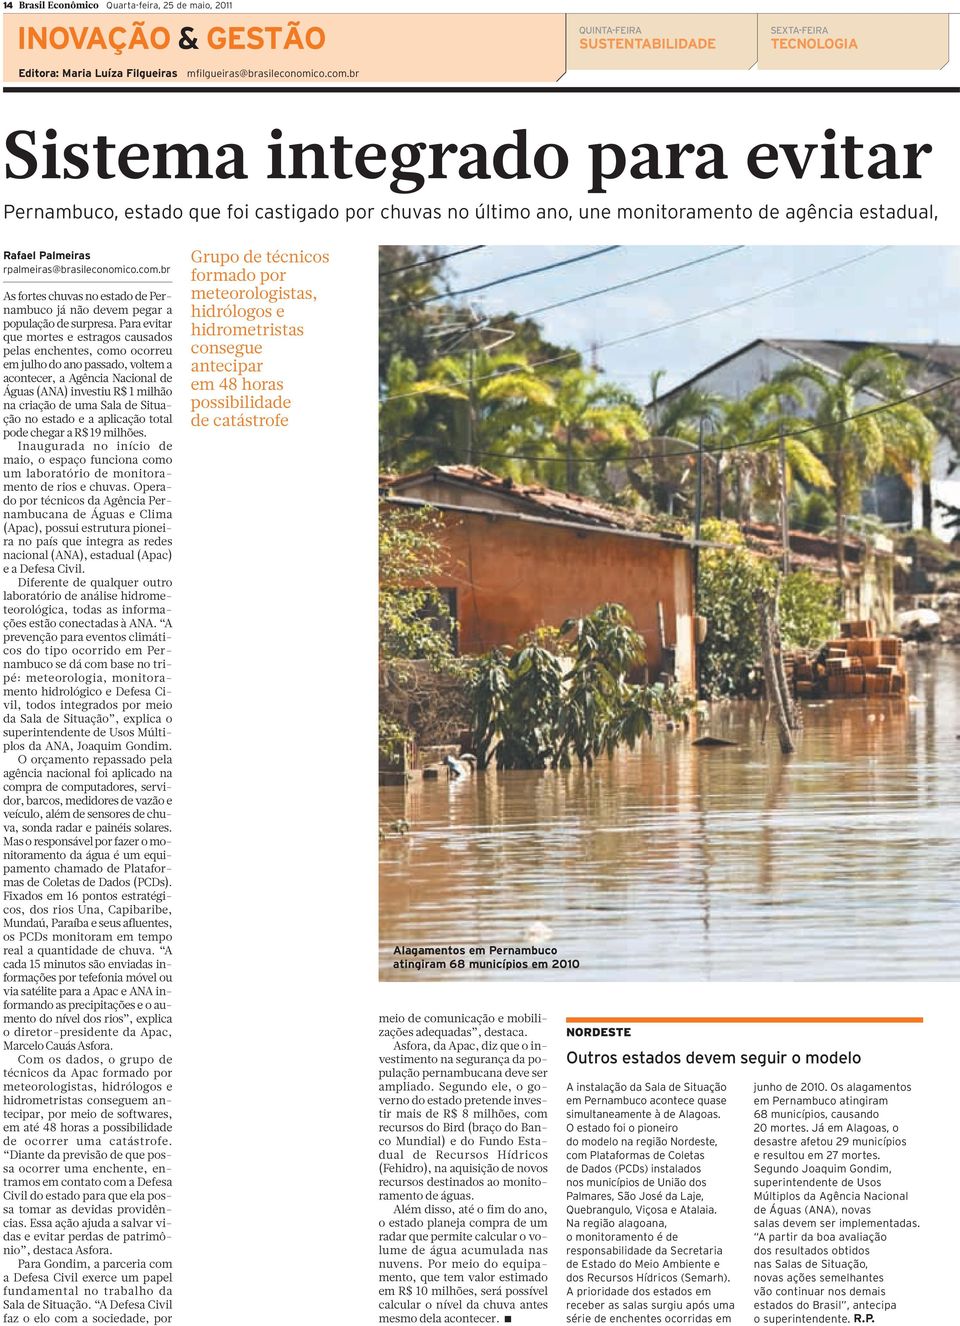 br As fortes chuvas no estado de Pernambuco já não devem pegar a população de surpresa.